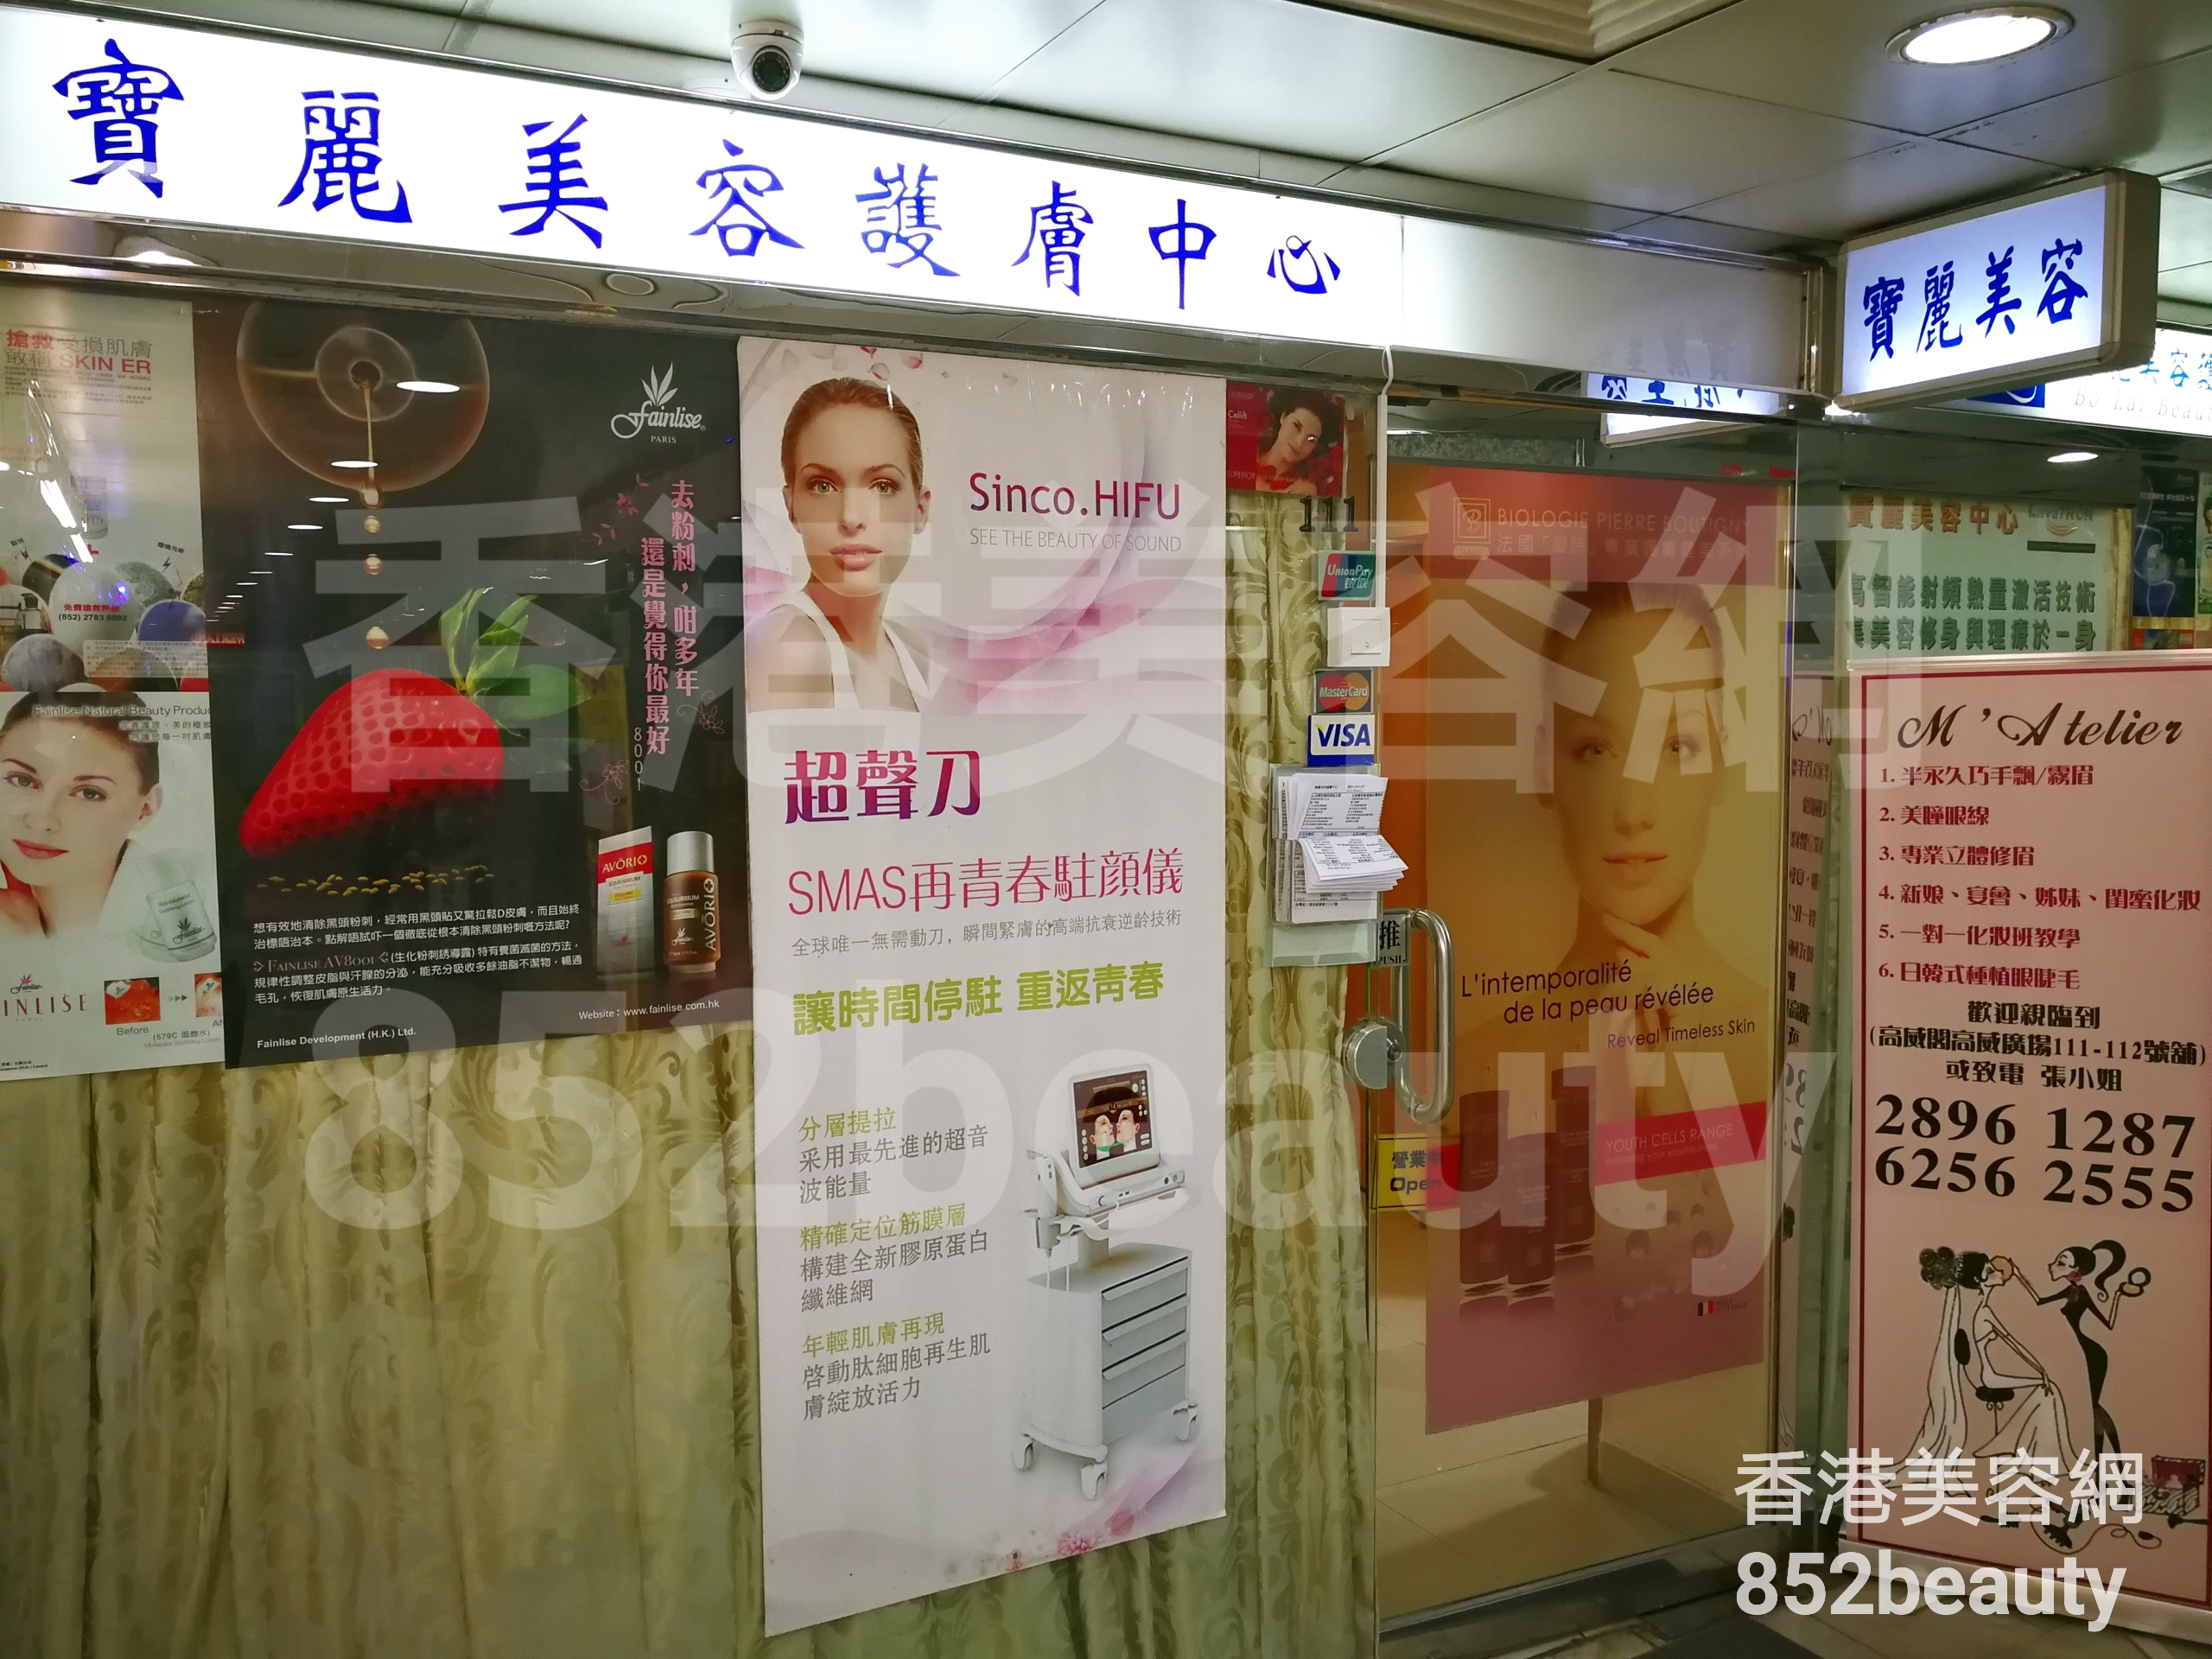 美容院 Beauty Salon: 寶麗美容護膚中心